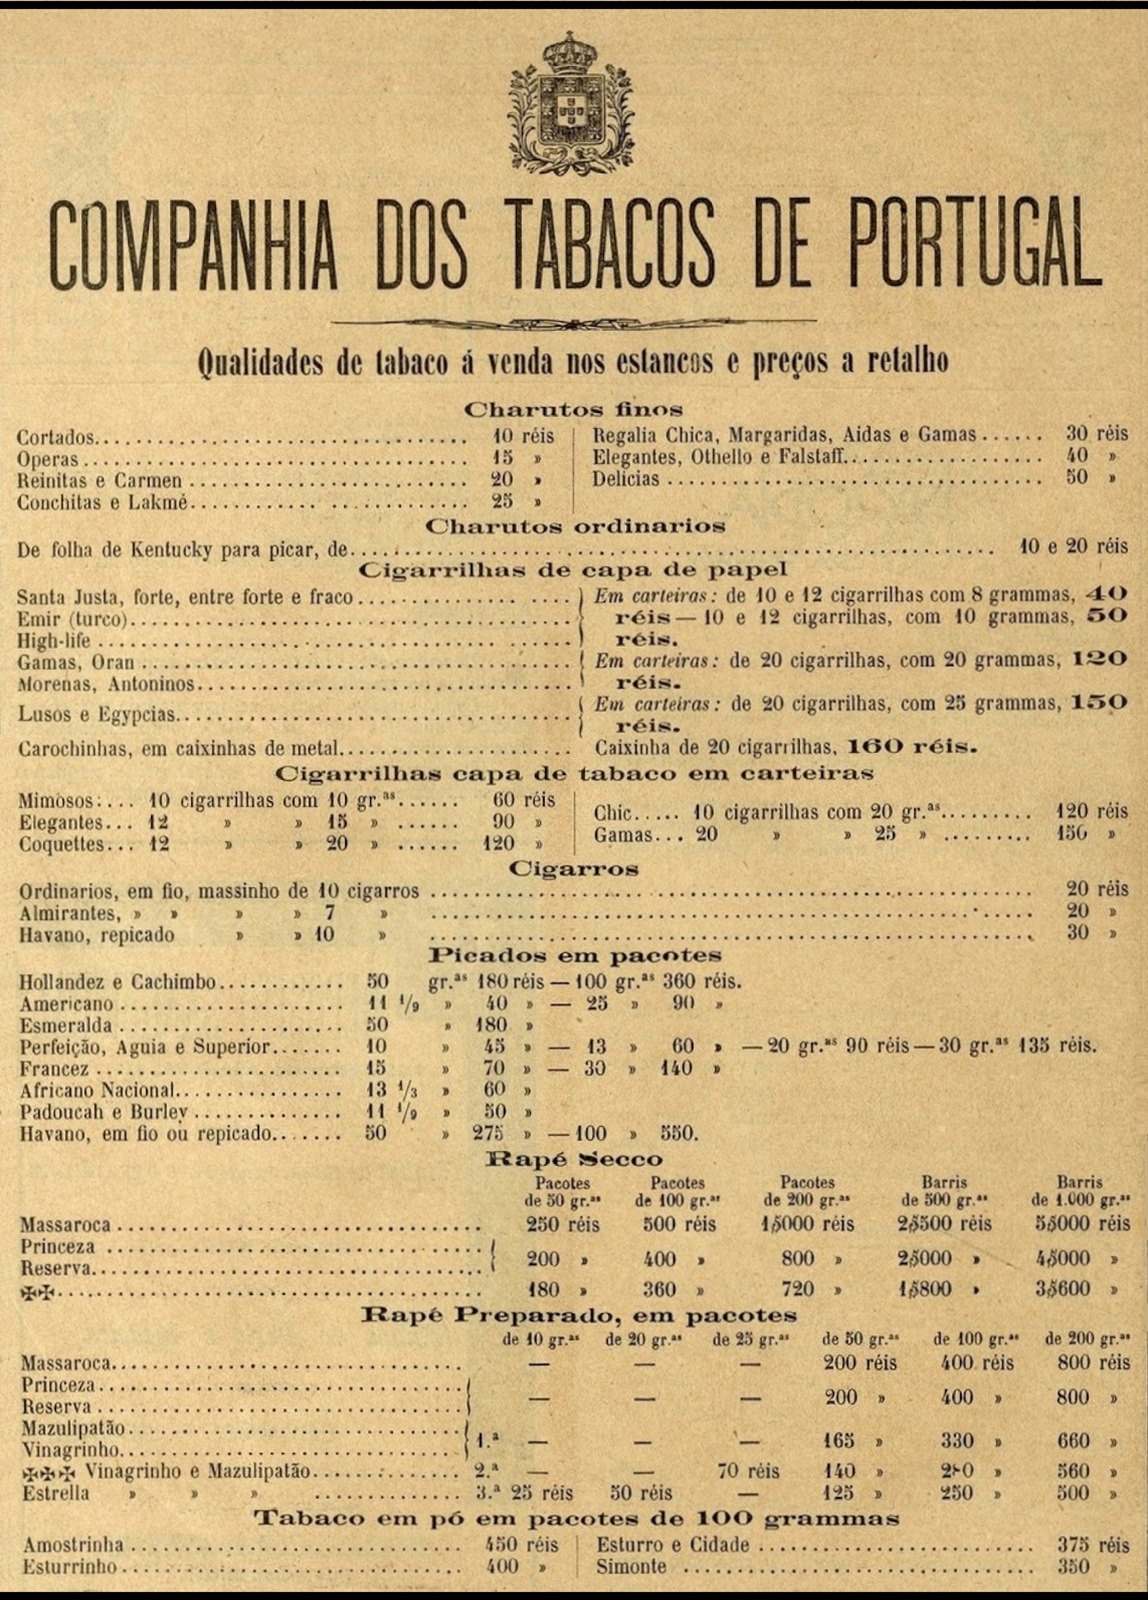 [1903-Companhia-dos-Tabacos-de-Portug[1].jpg]